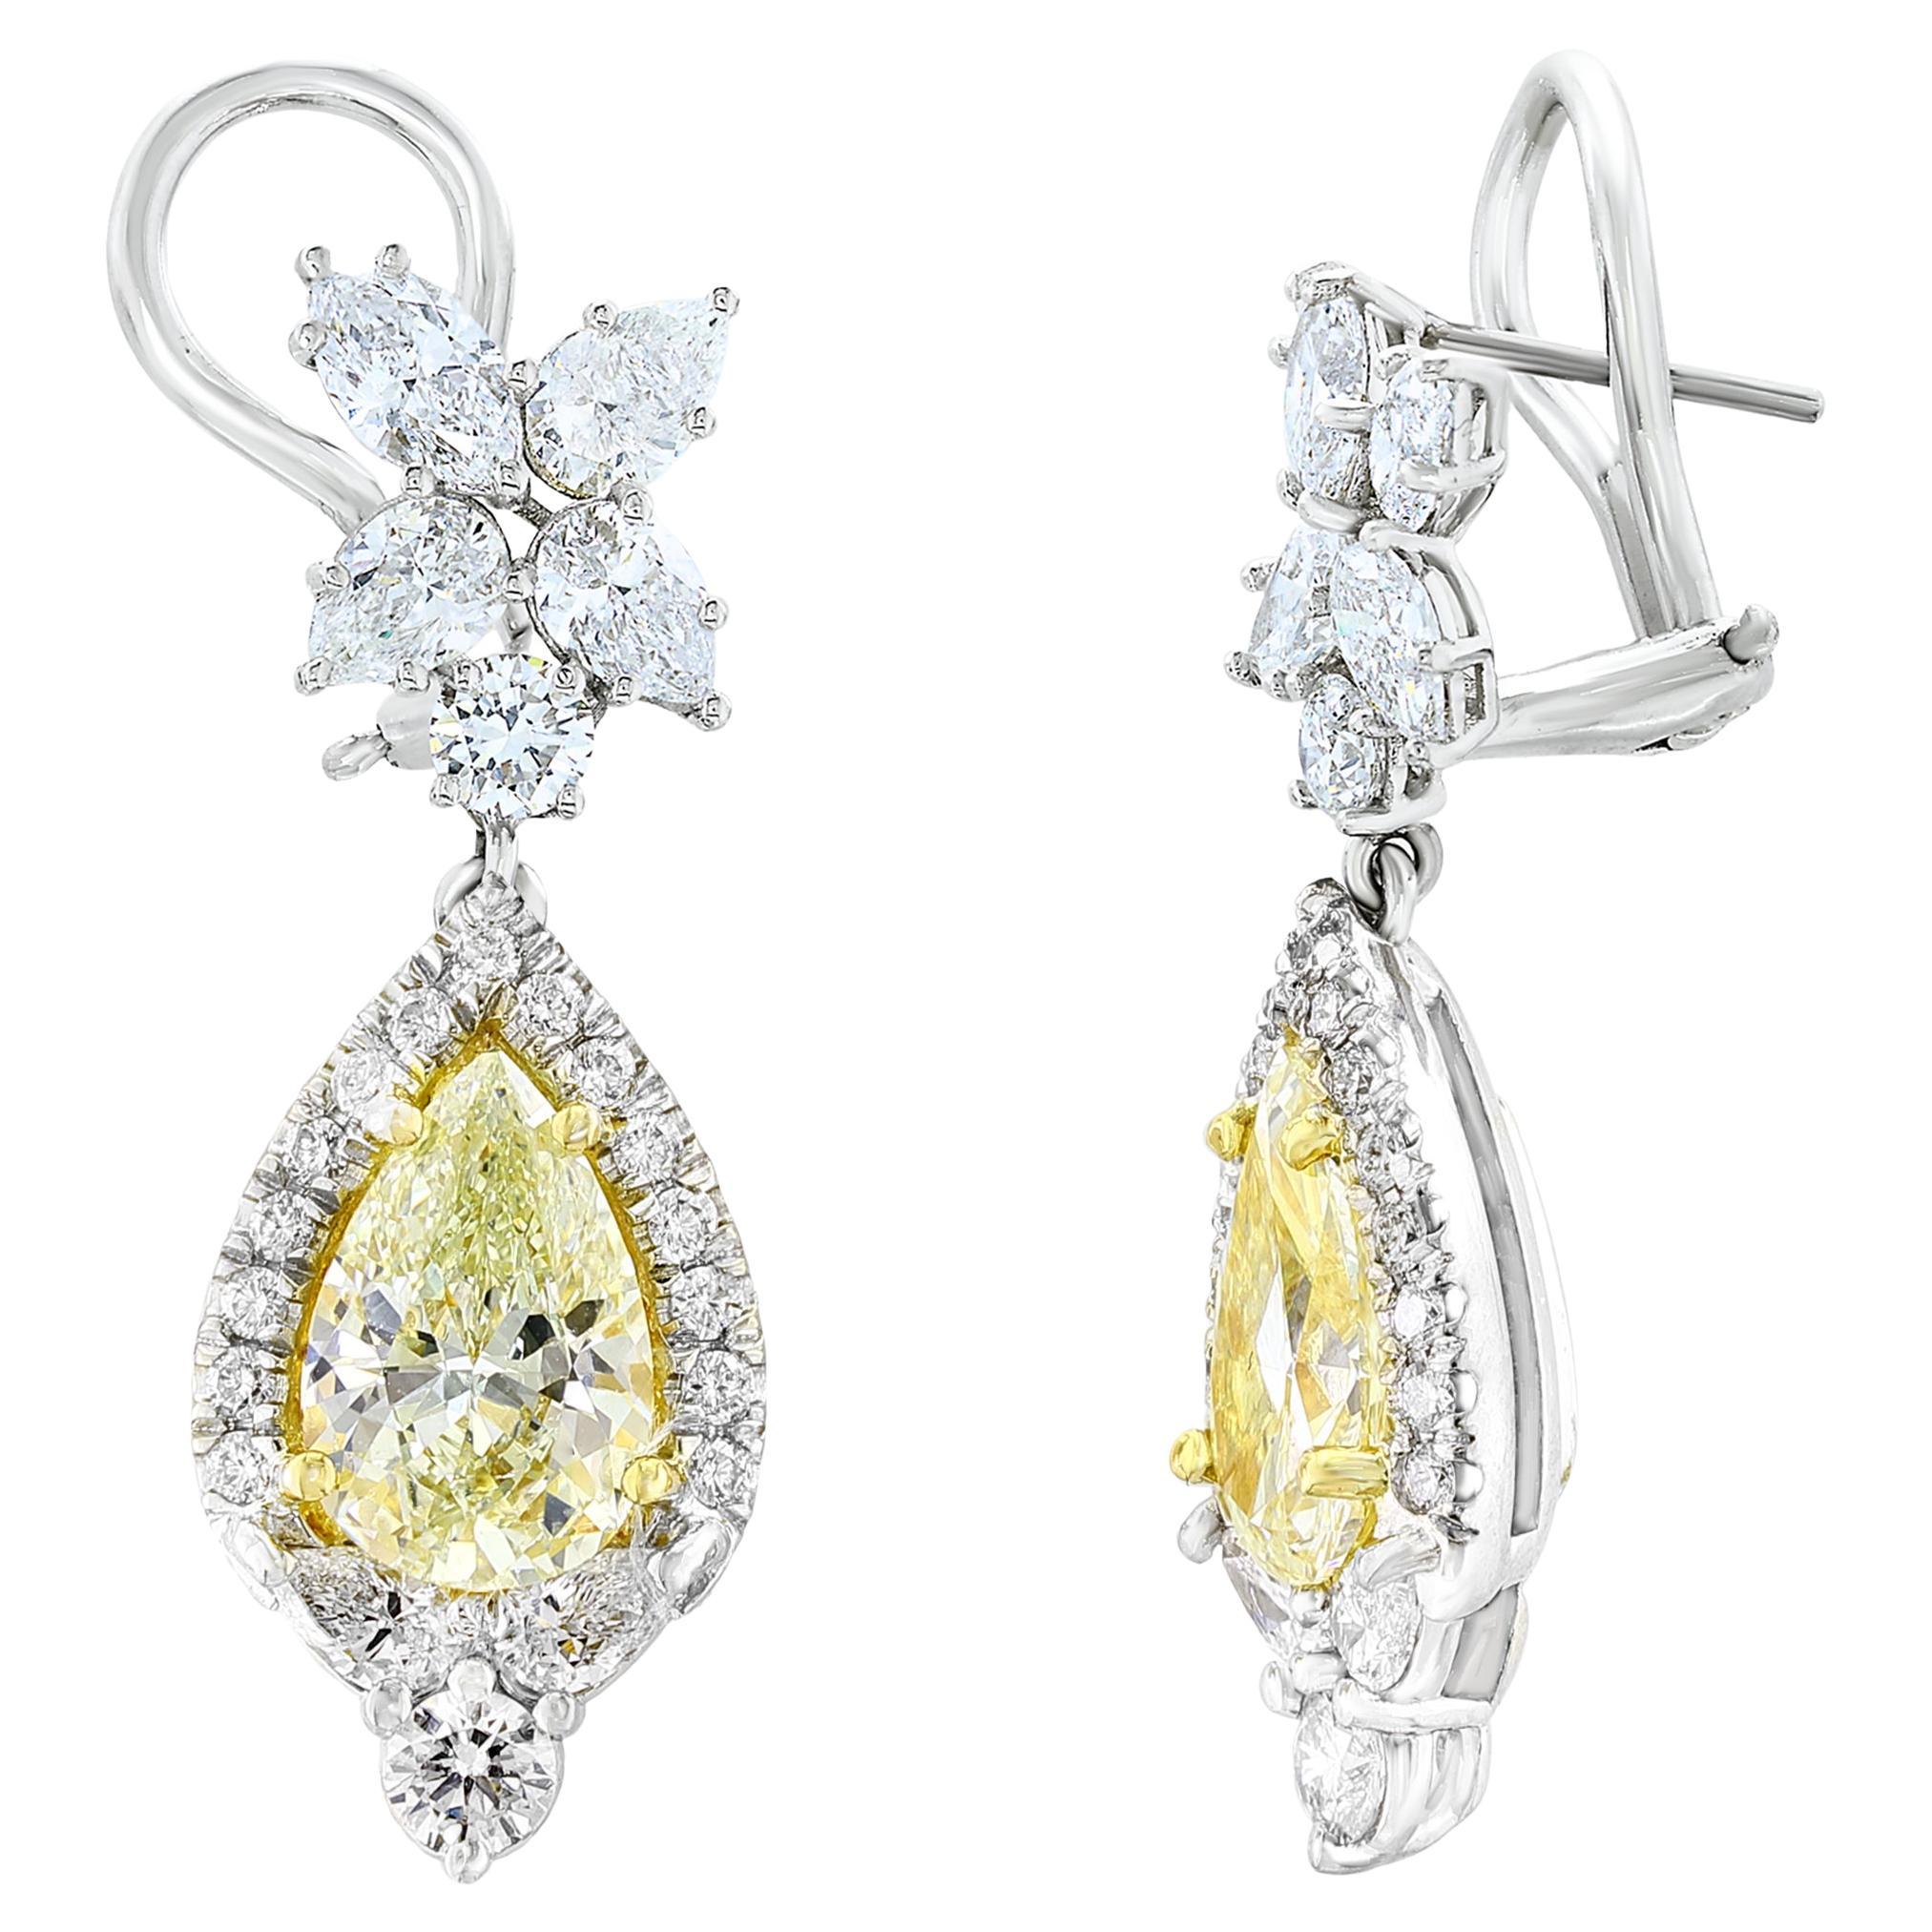 CERTIFIED 2.89 Carat Fancy Yellow Diamond Drop Earrings in 18K White Gold